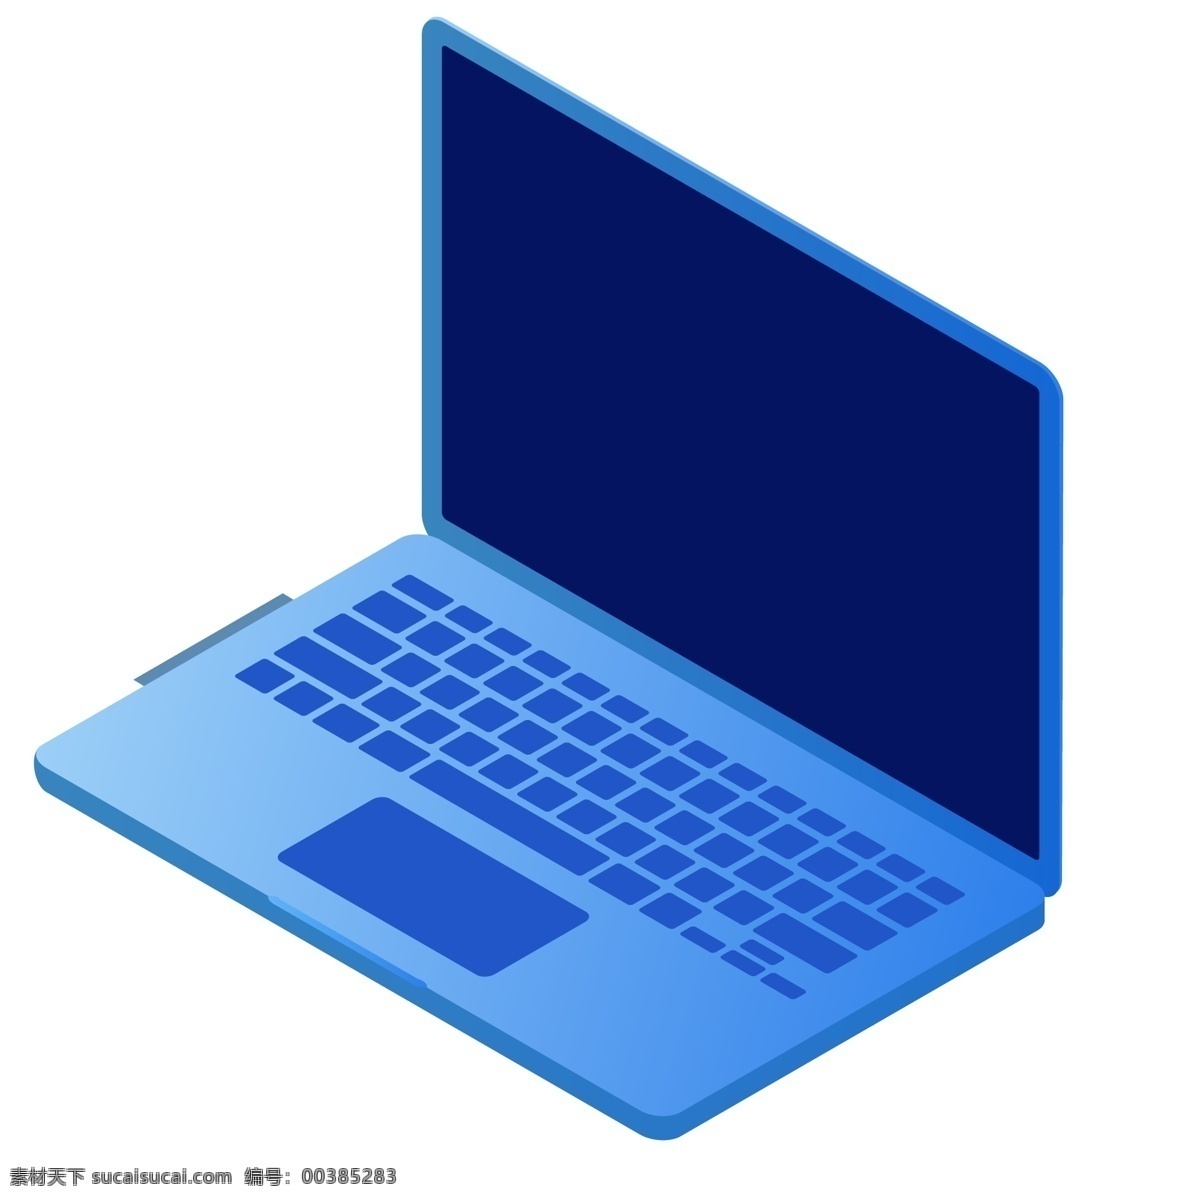 一个 蓝色 笔记本 电脑 科技 商务办公 卡通办公 科技办公 电子商务 商务科技 现代商务 商务工作 卡通工作